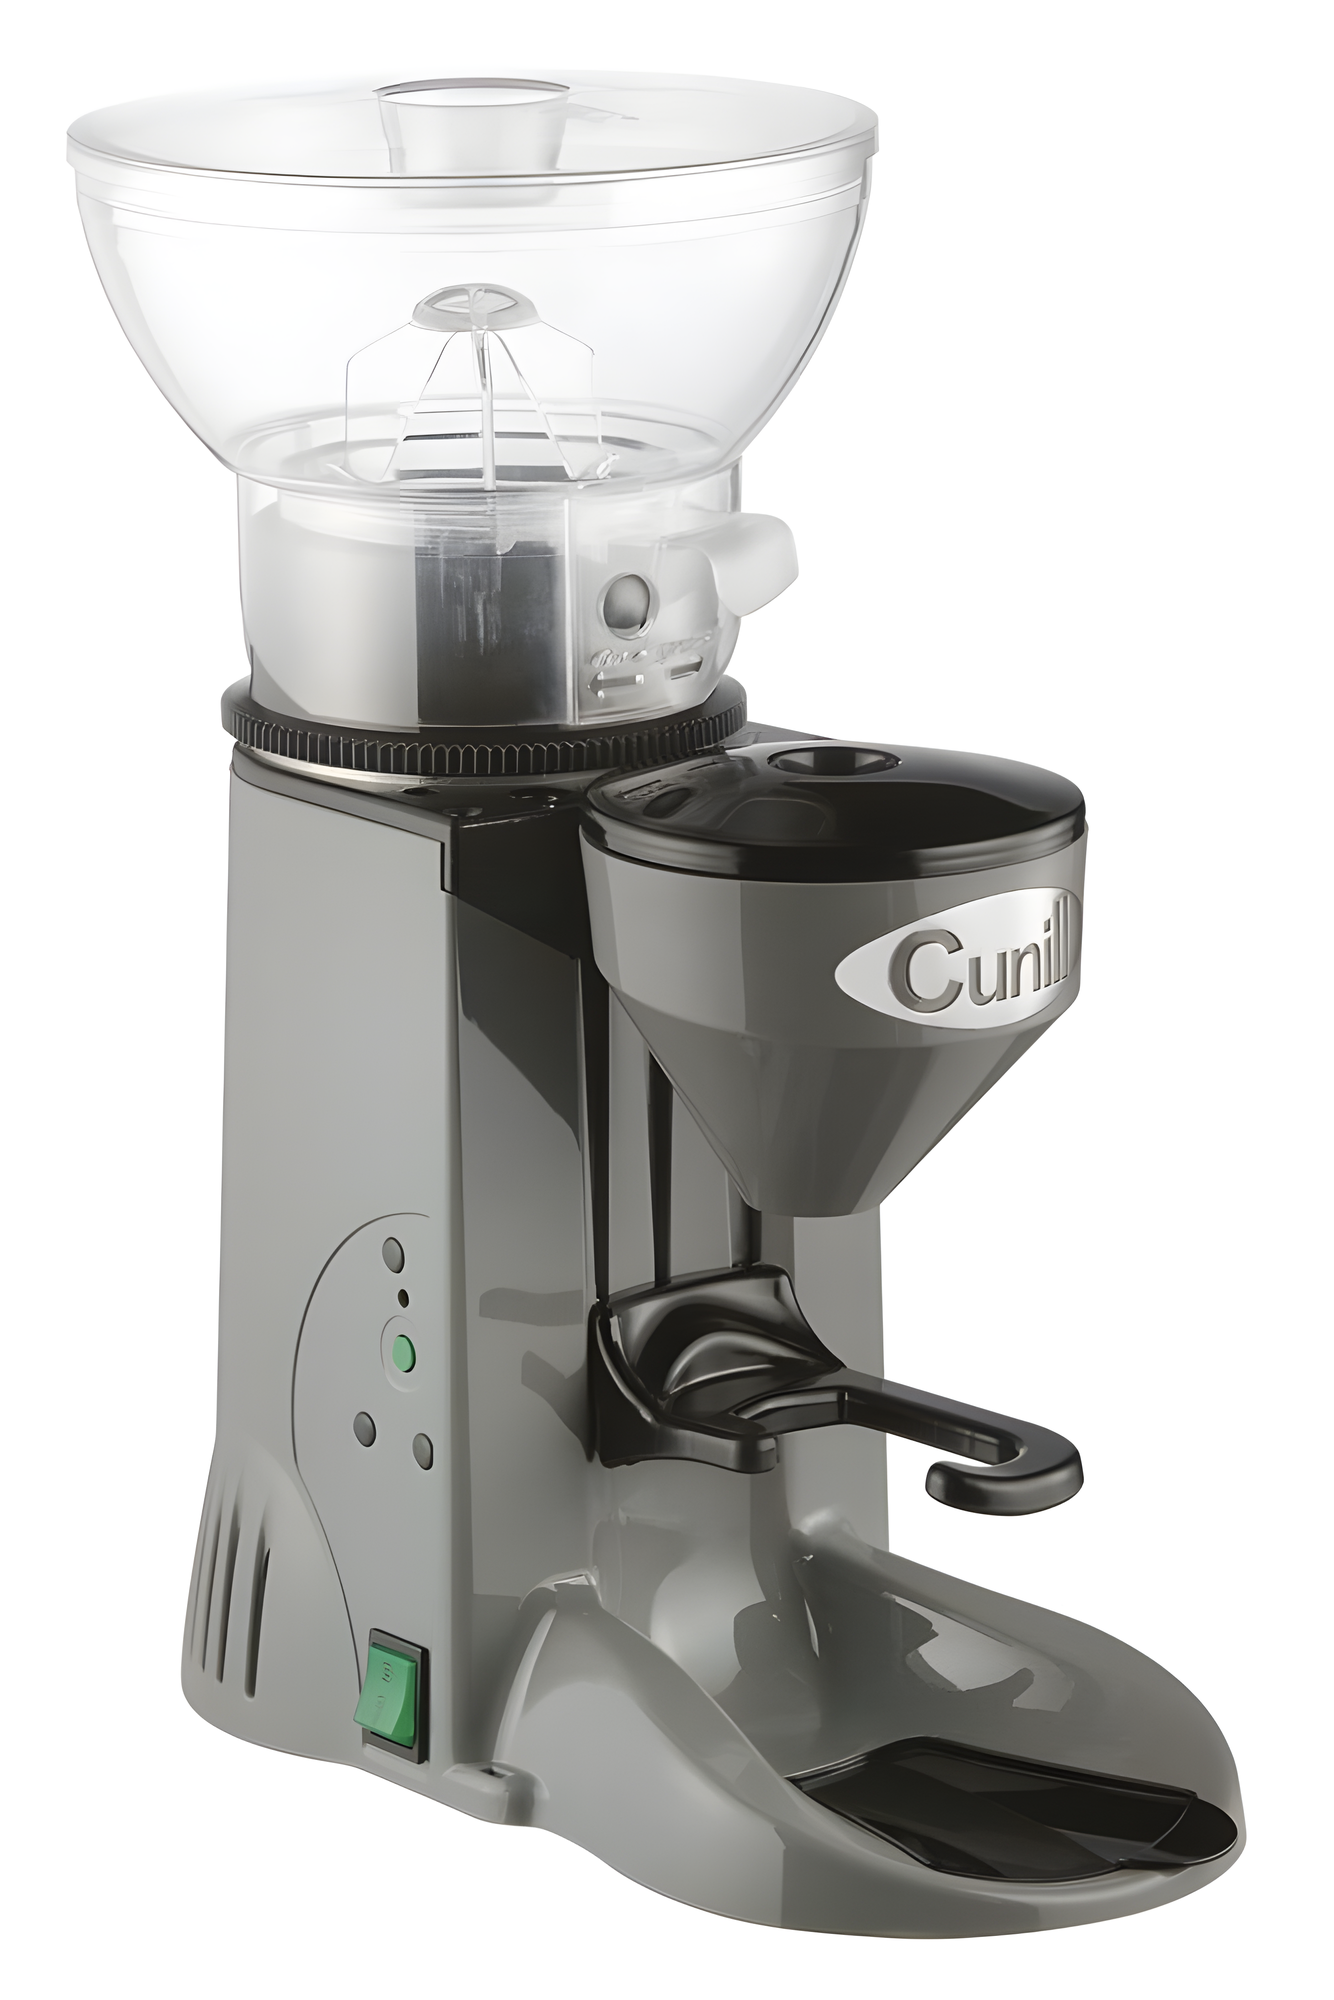 Кофемолка CUNILL TRANQUILO grey light. 0.27 кВт влагозащита класс IP21 беспрерывная работа до 30 мин до 5кг/час